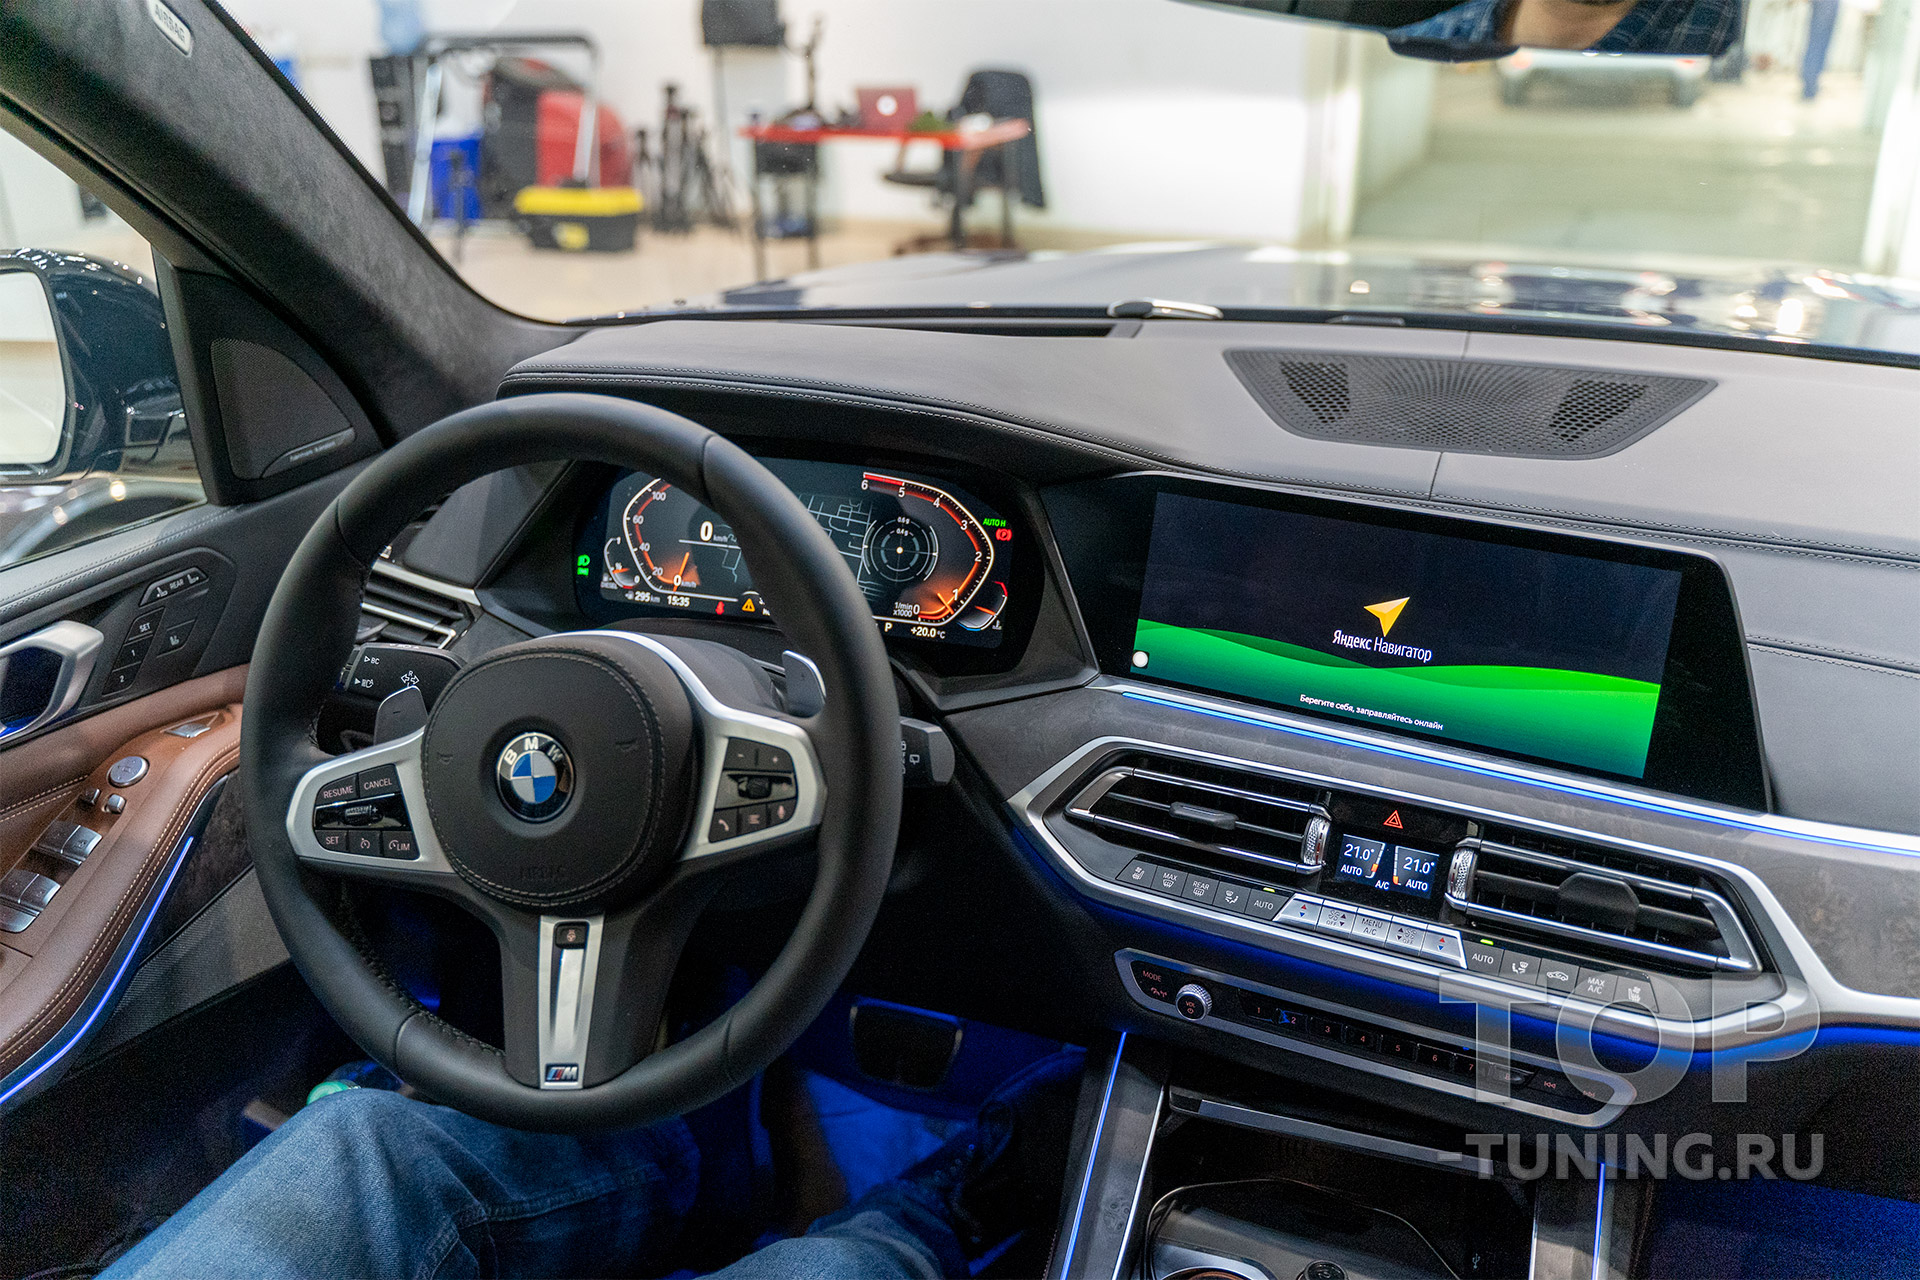 106034 Навигация с пробками и видео в движении для BMW X7, X6, X5